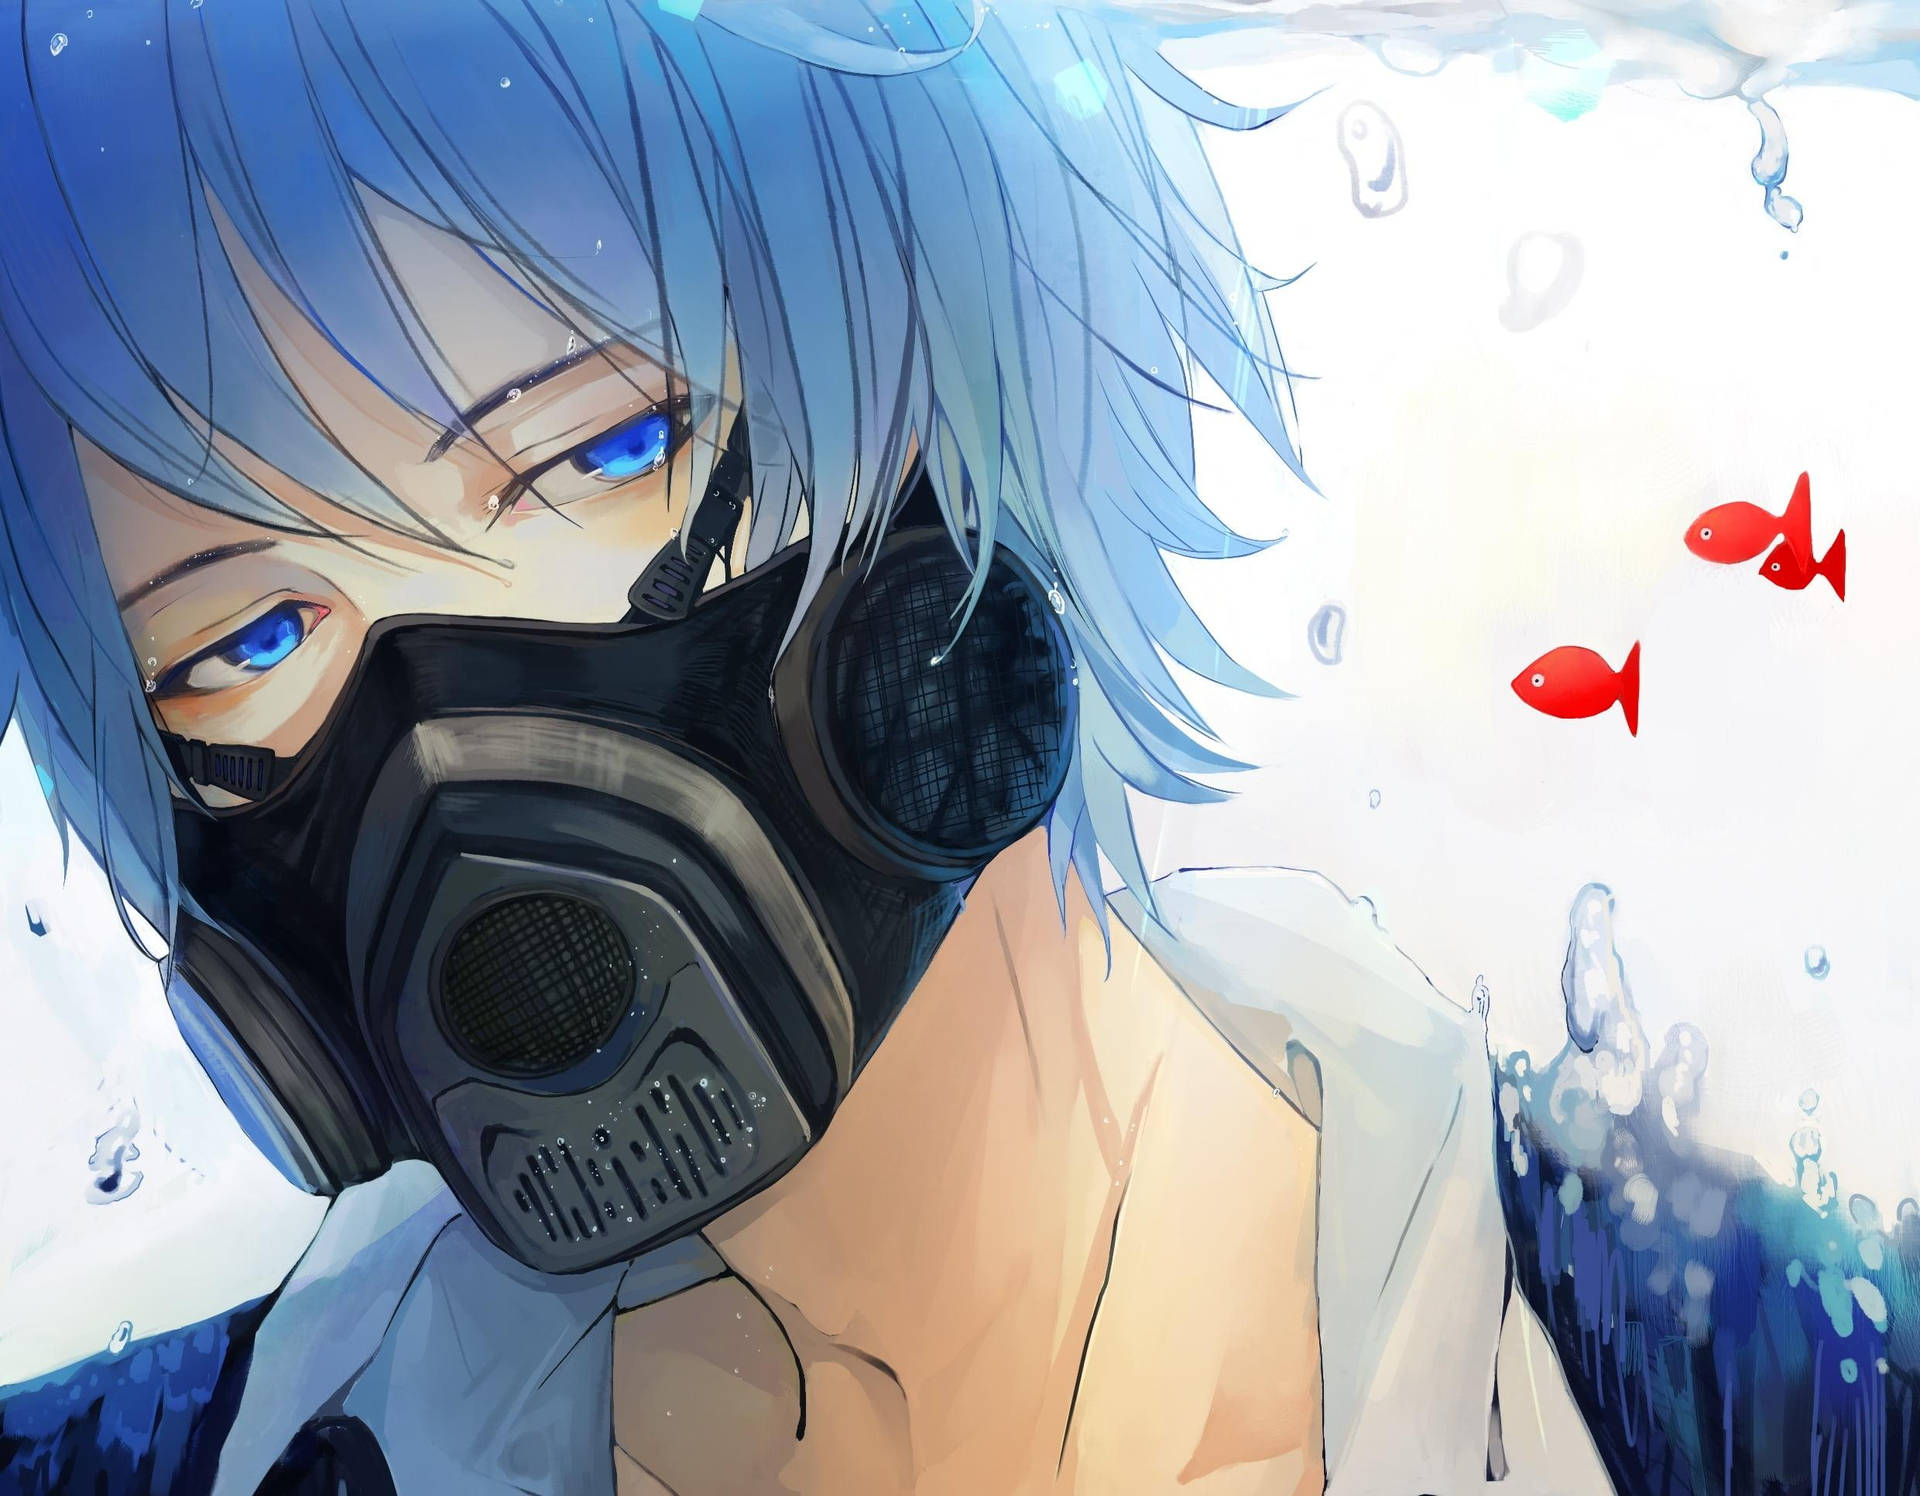 Masked Anime Blue Boy kommer til live på din skærm. Wallpaper